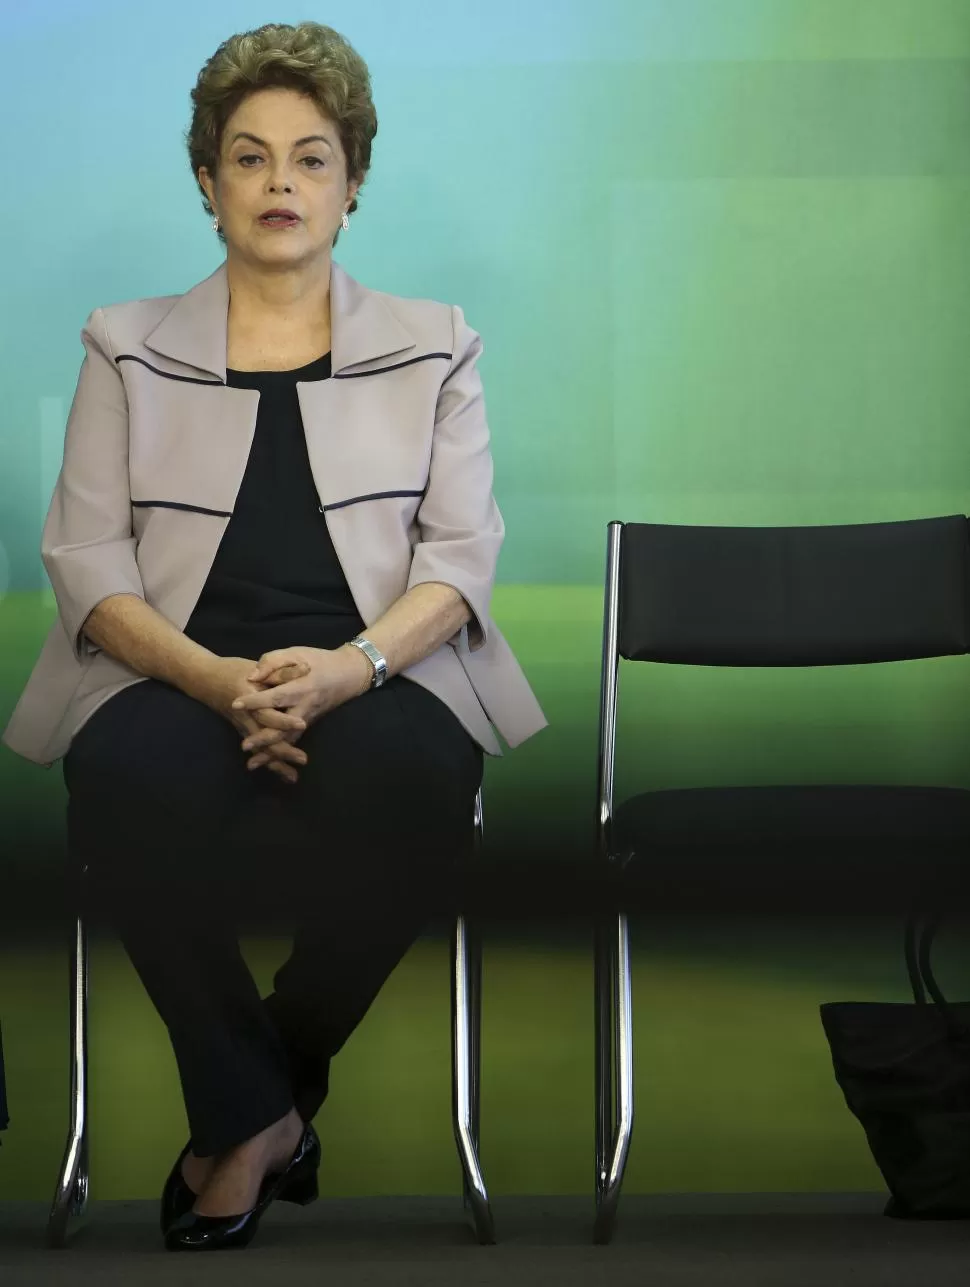 CON FUERZA. Rousseff criticó el “proceso golpista” y defendió su legitimidad. reuters